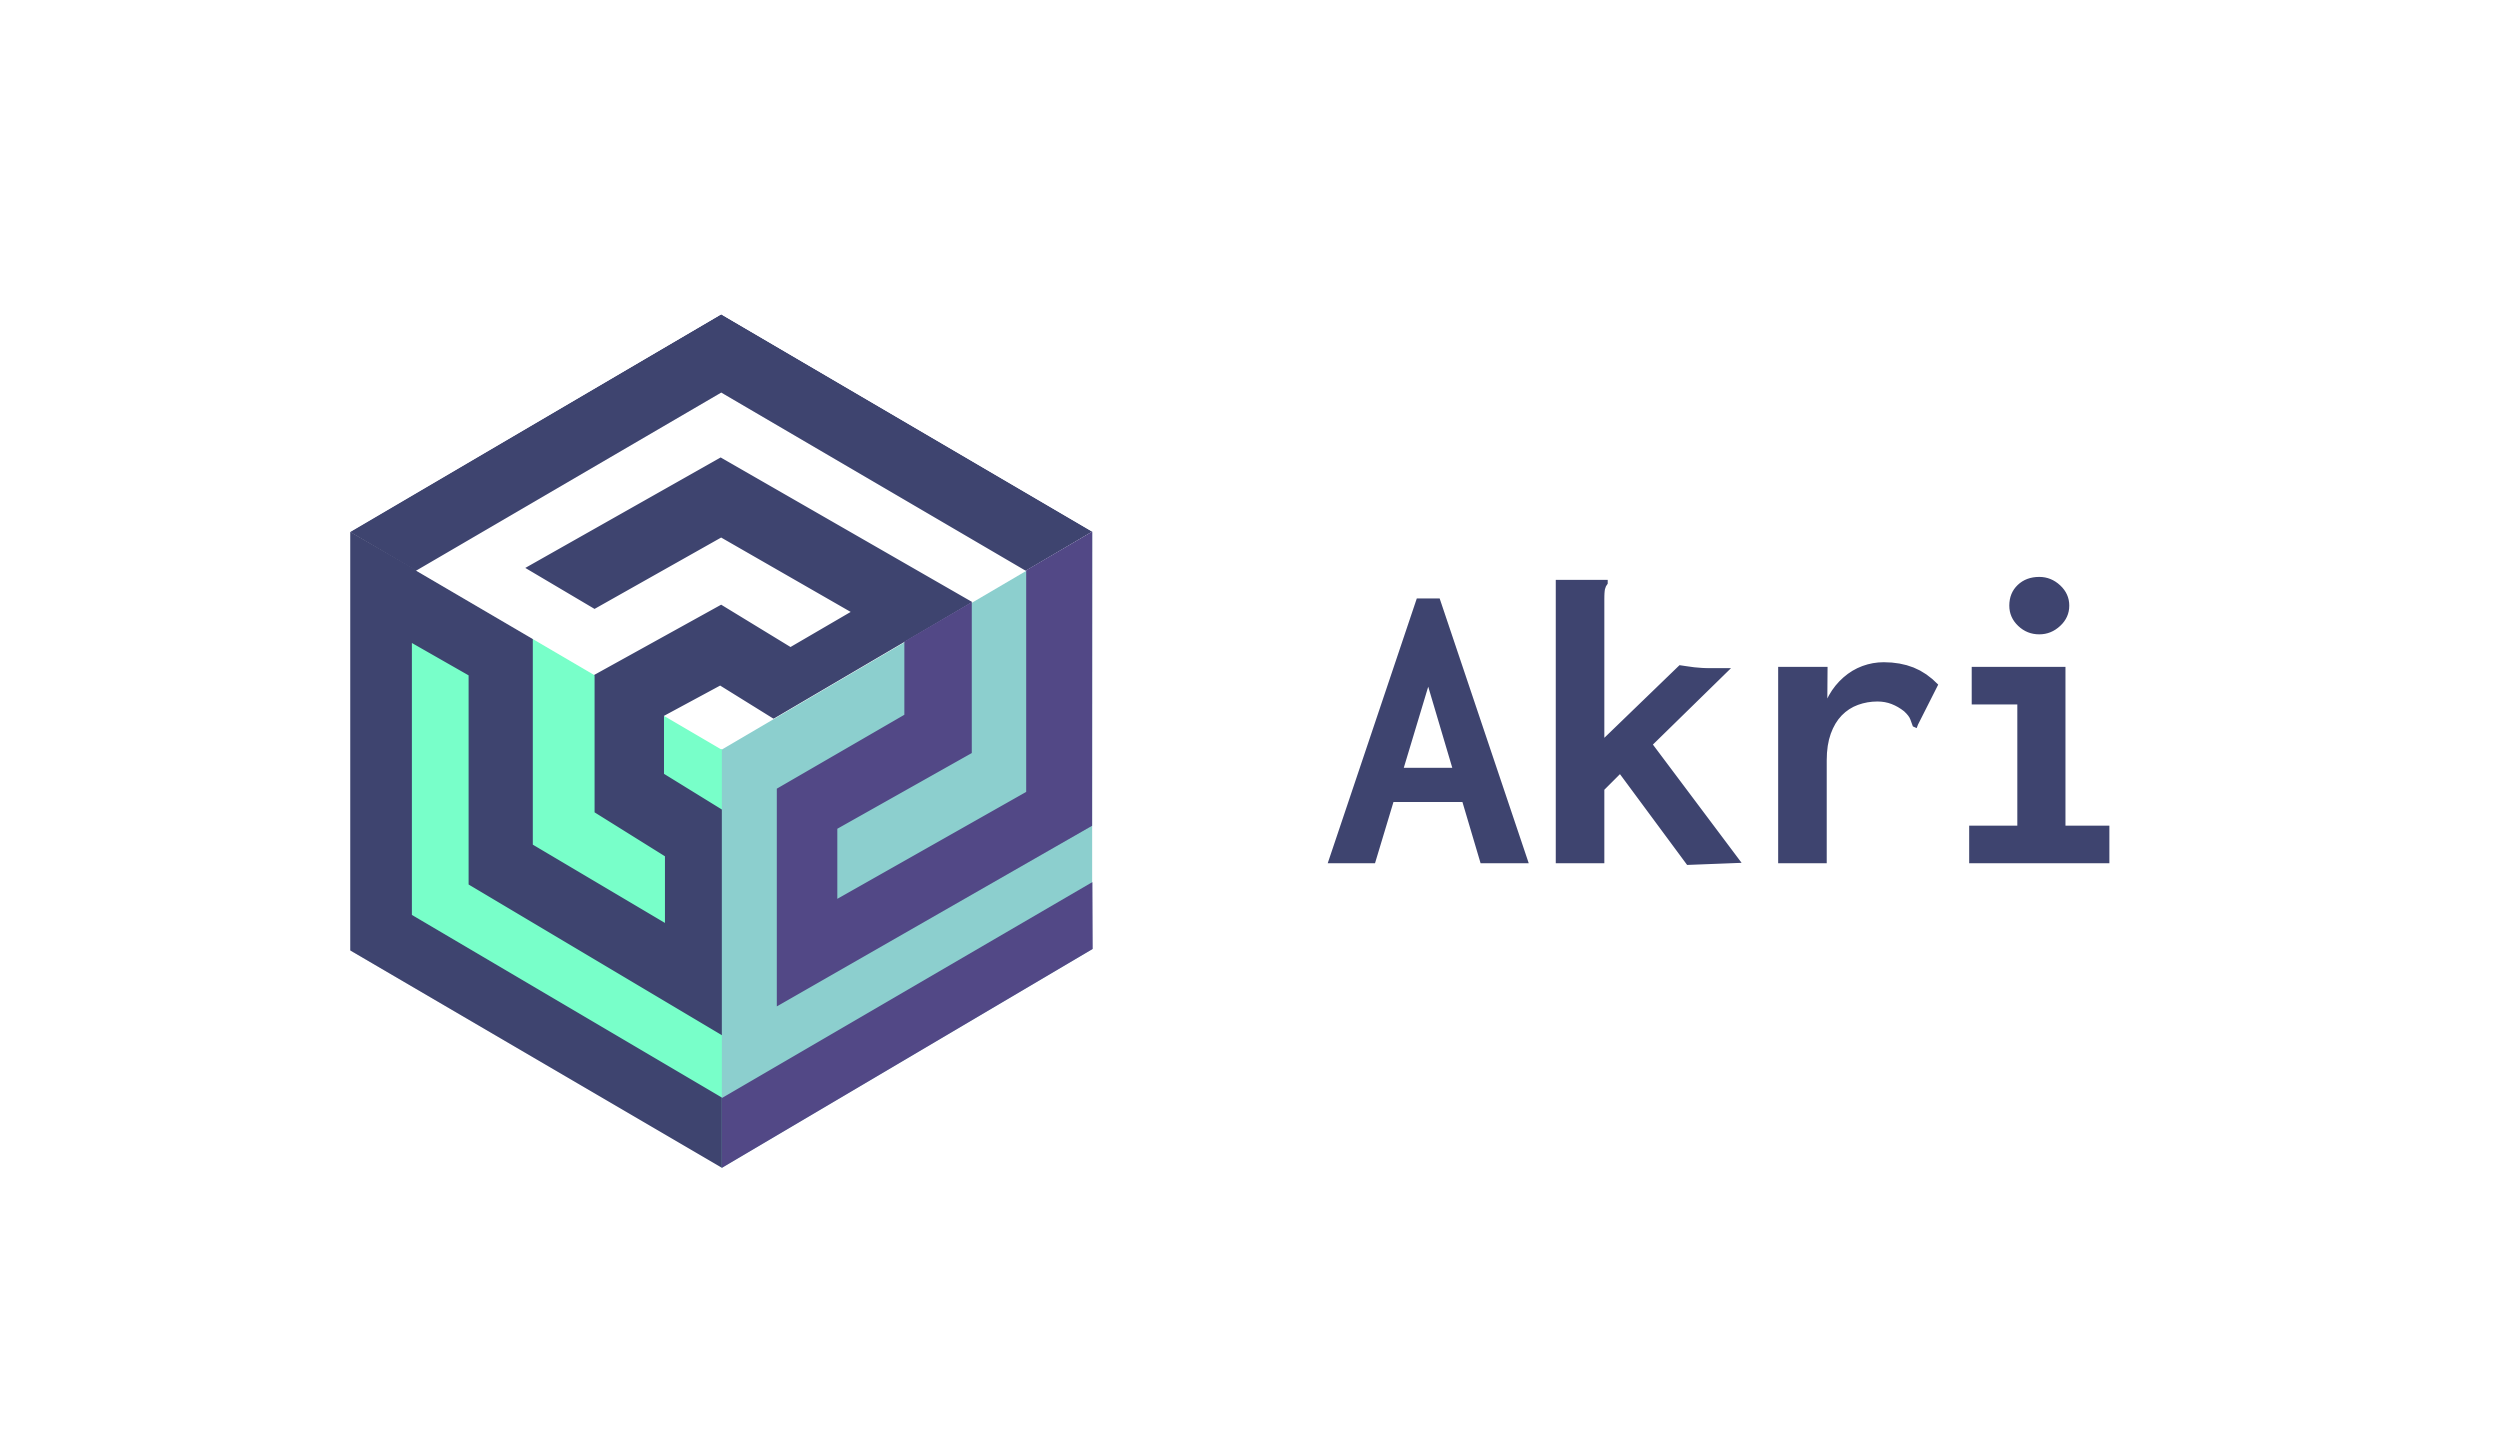 Akri 项目的徽标。